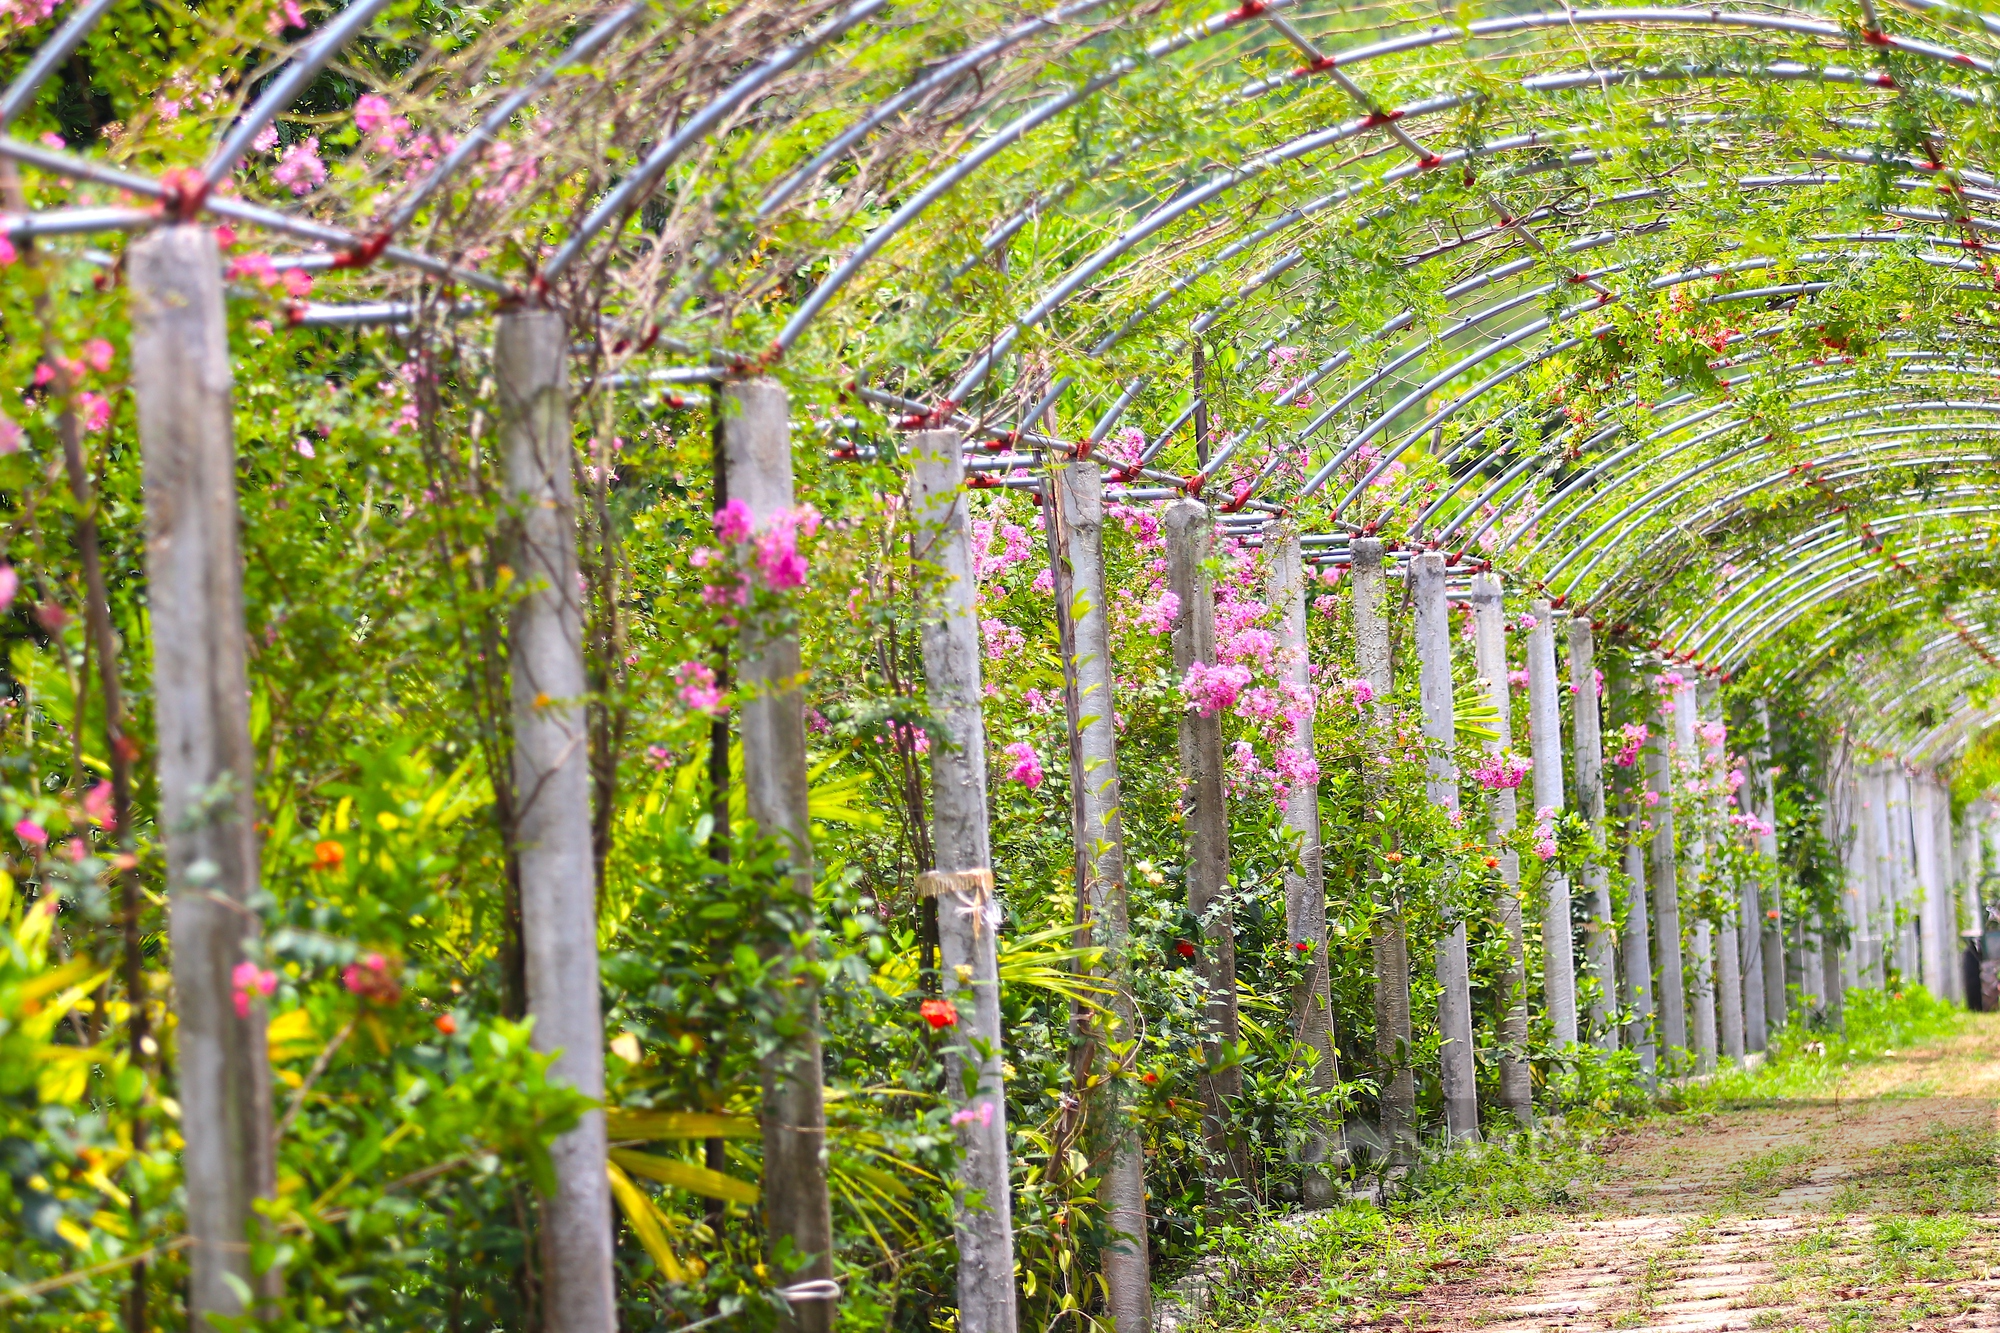 Cận cảnh khu vườn sinh thái thảo dược đẹp như tranh trên núi huyện Yên Thành - Ảnh 11.